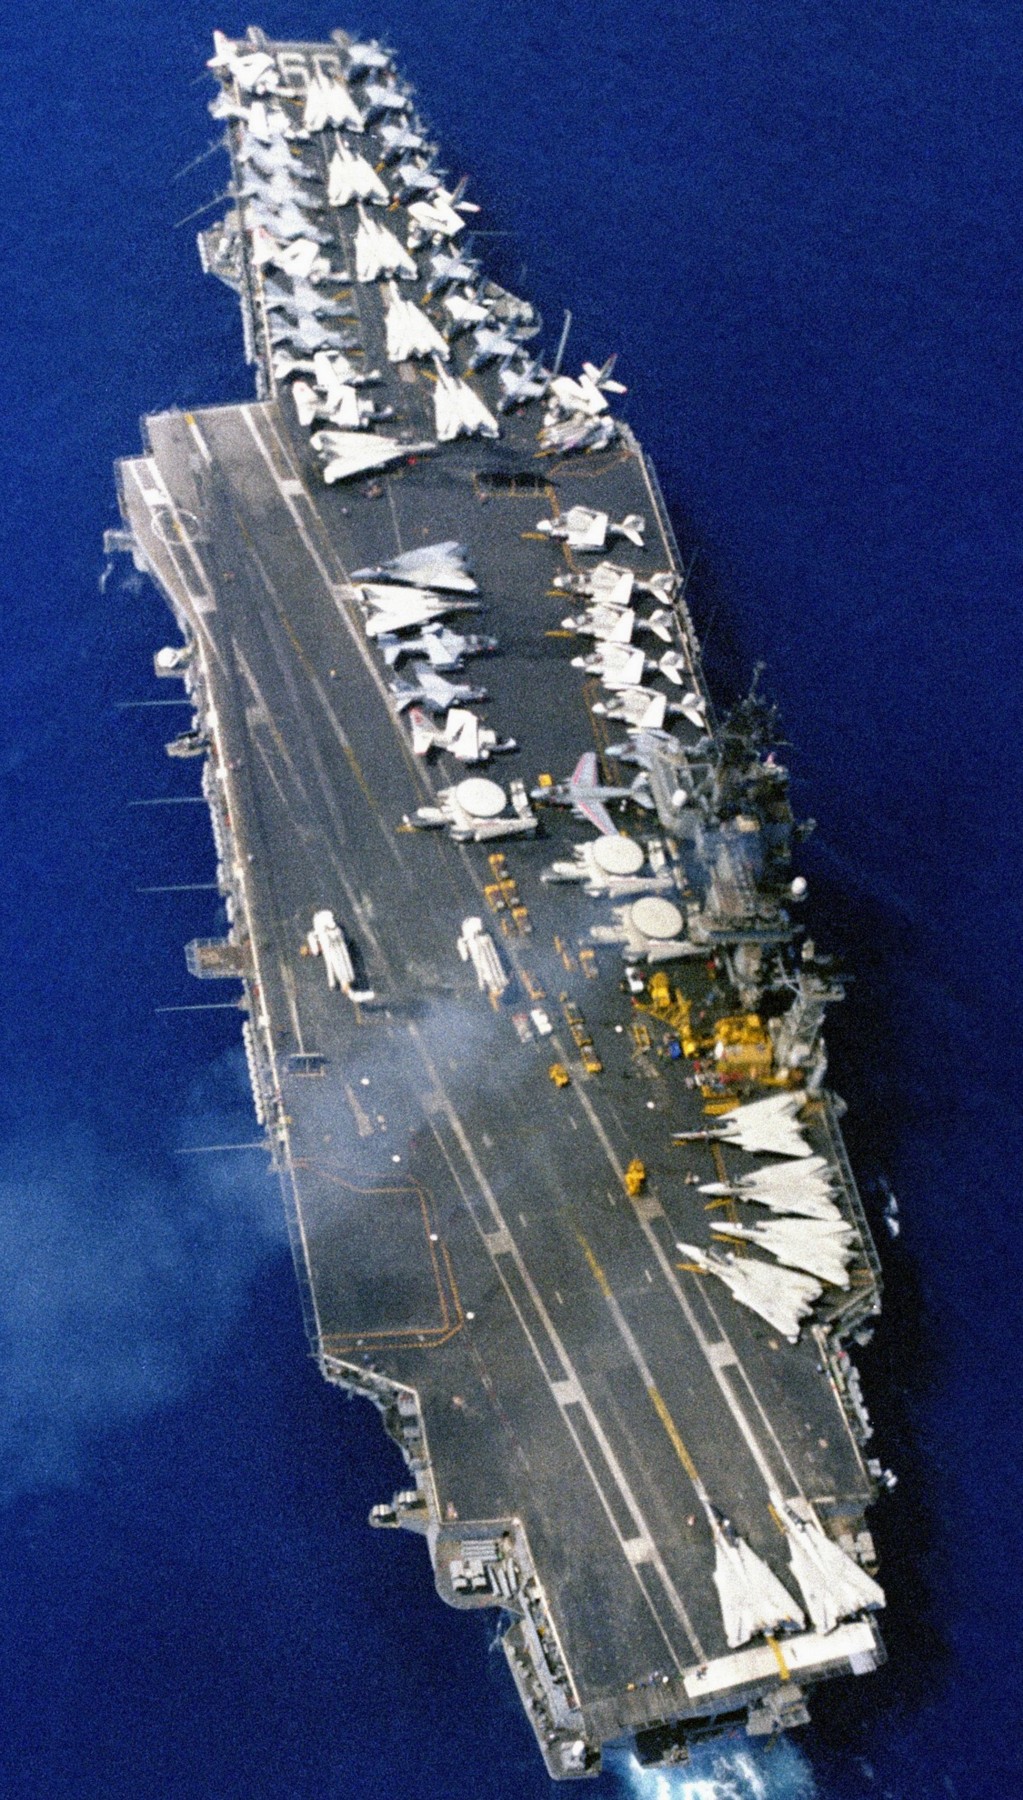 cv-63 uss kitty hawk aircraft carrier air wing cvw-2 us navy 343